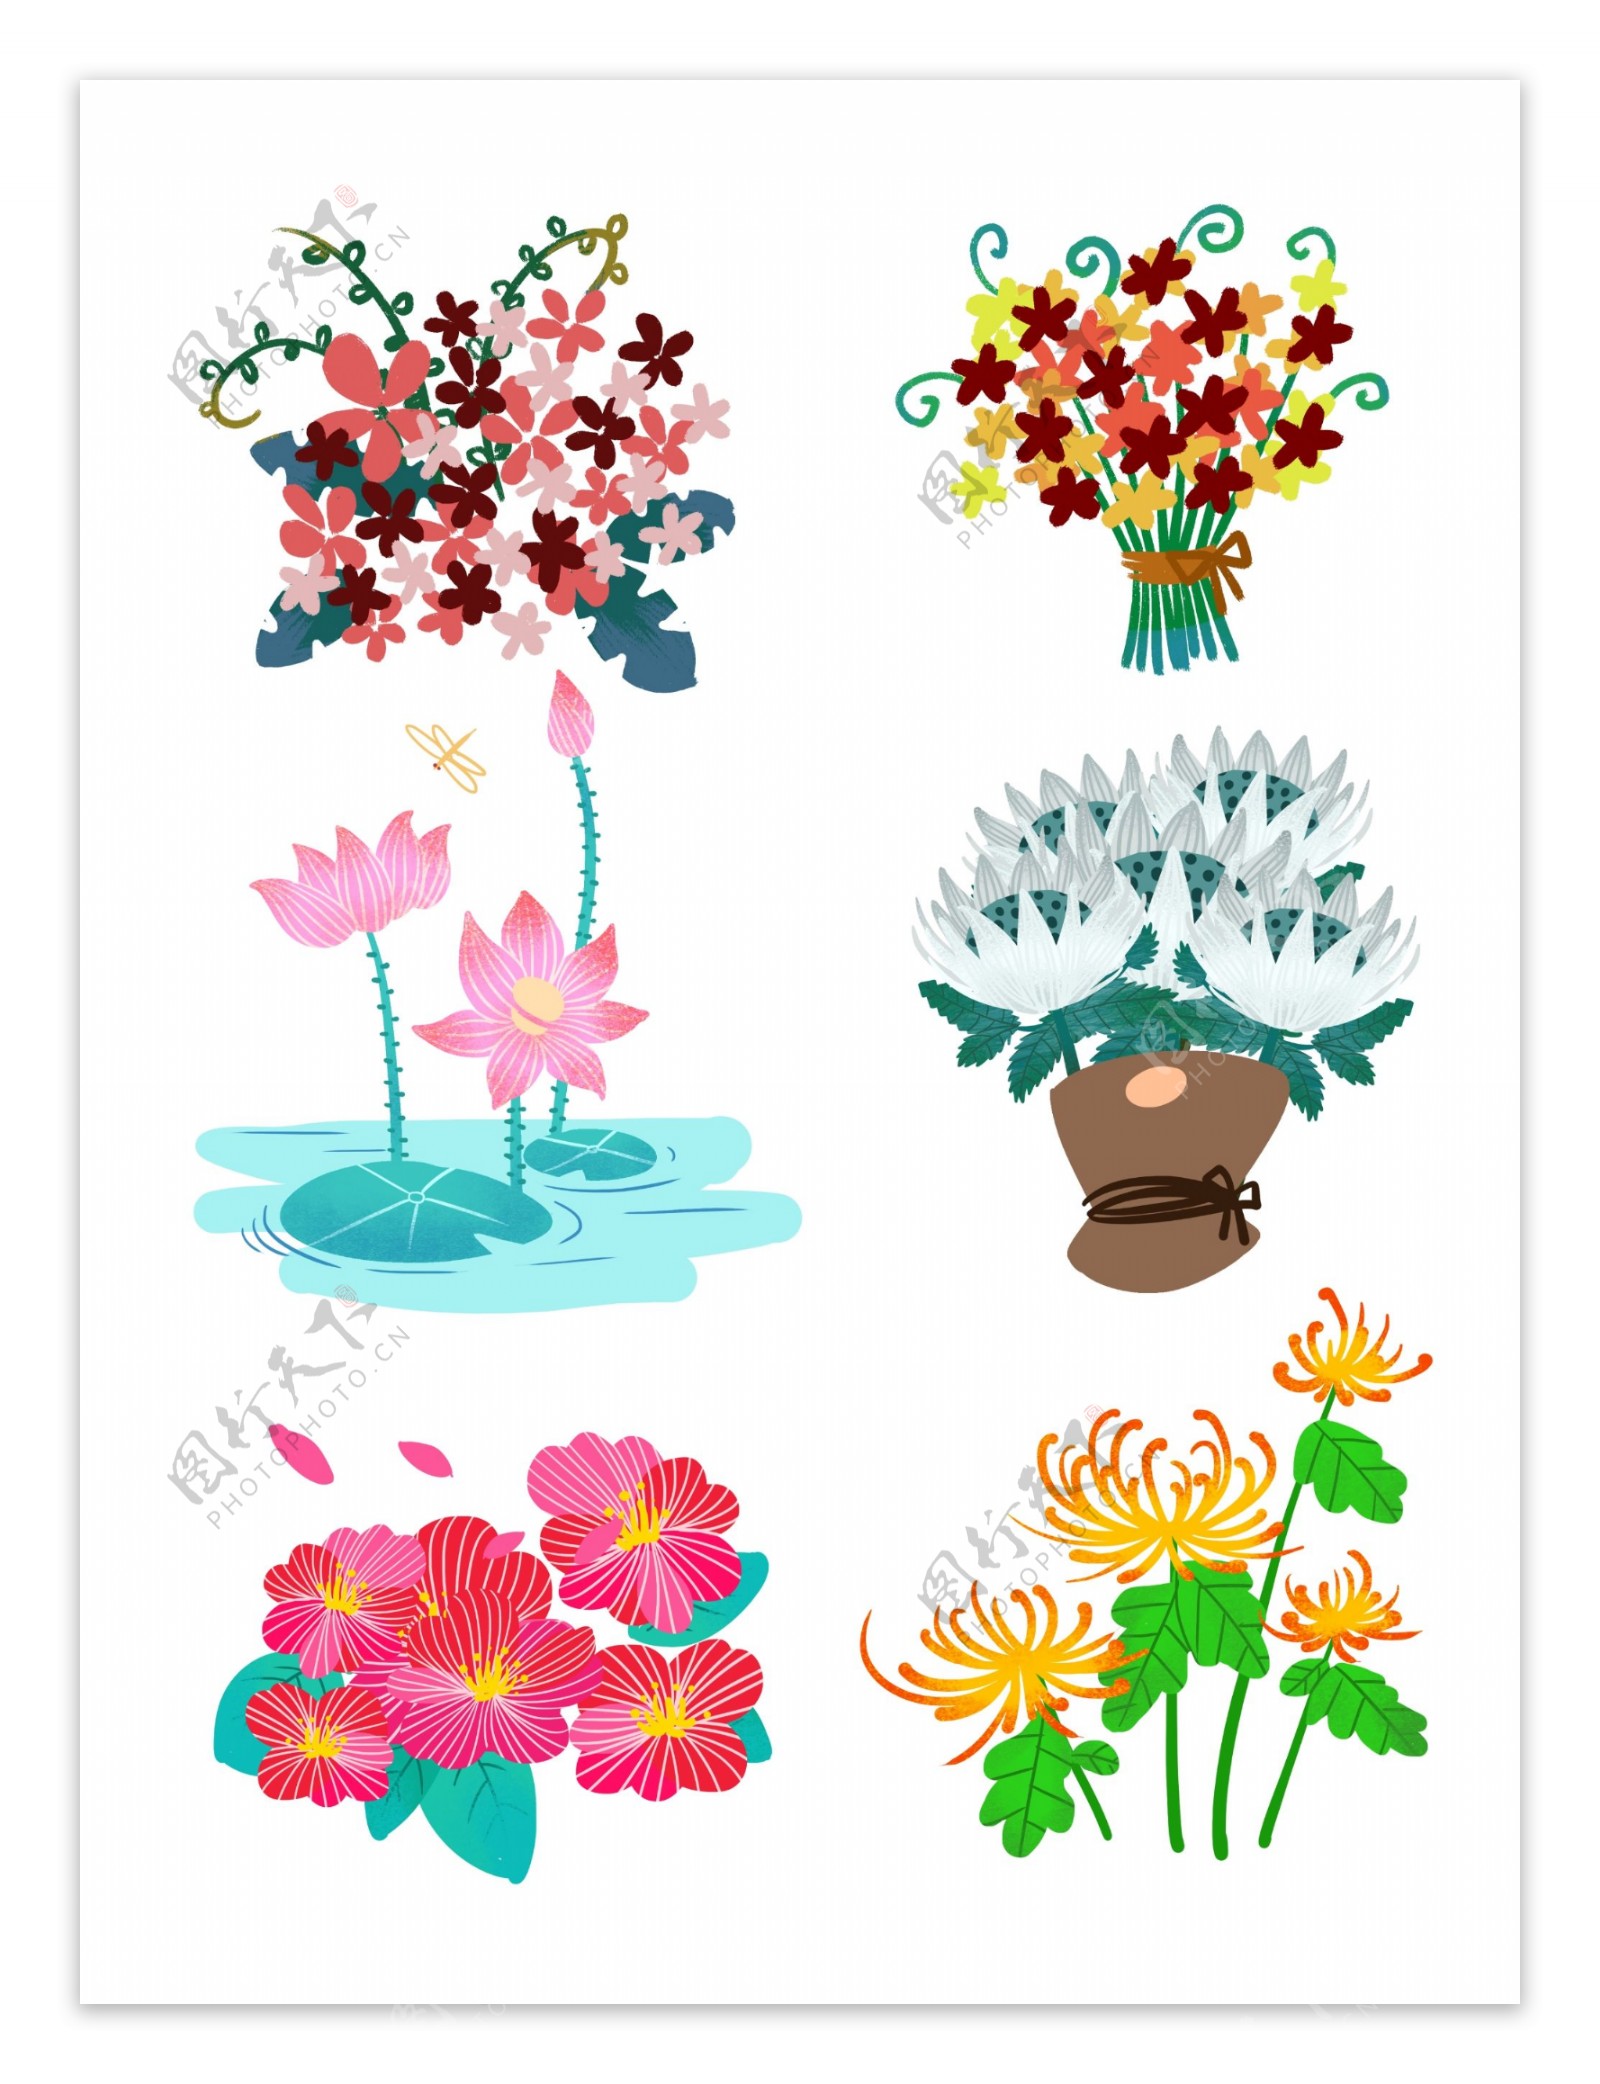 6组卡通手绘彩色花朵花卉装饰元素图案合集